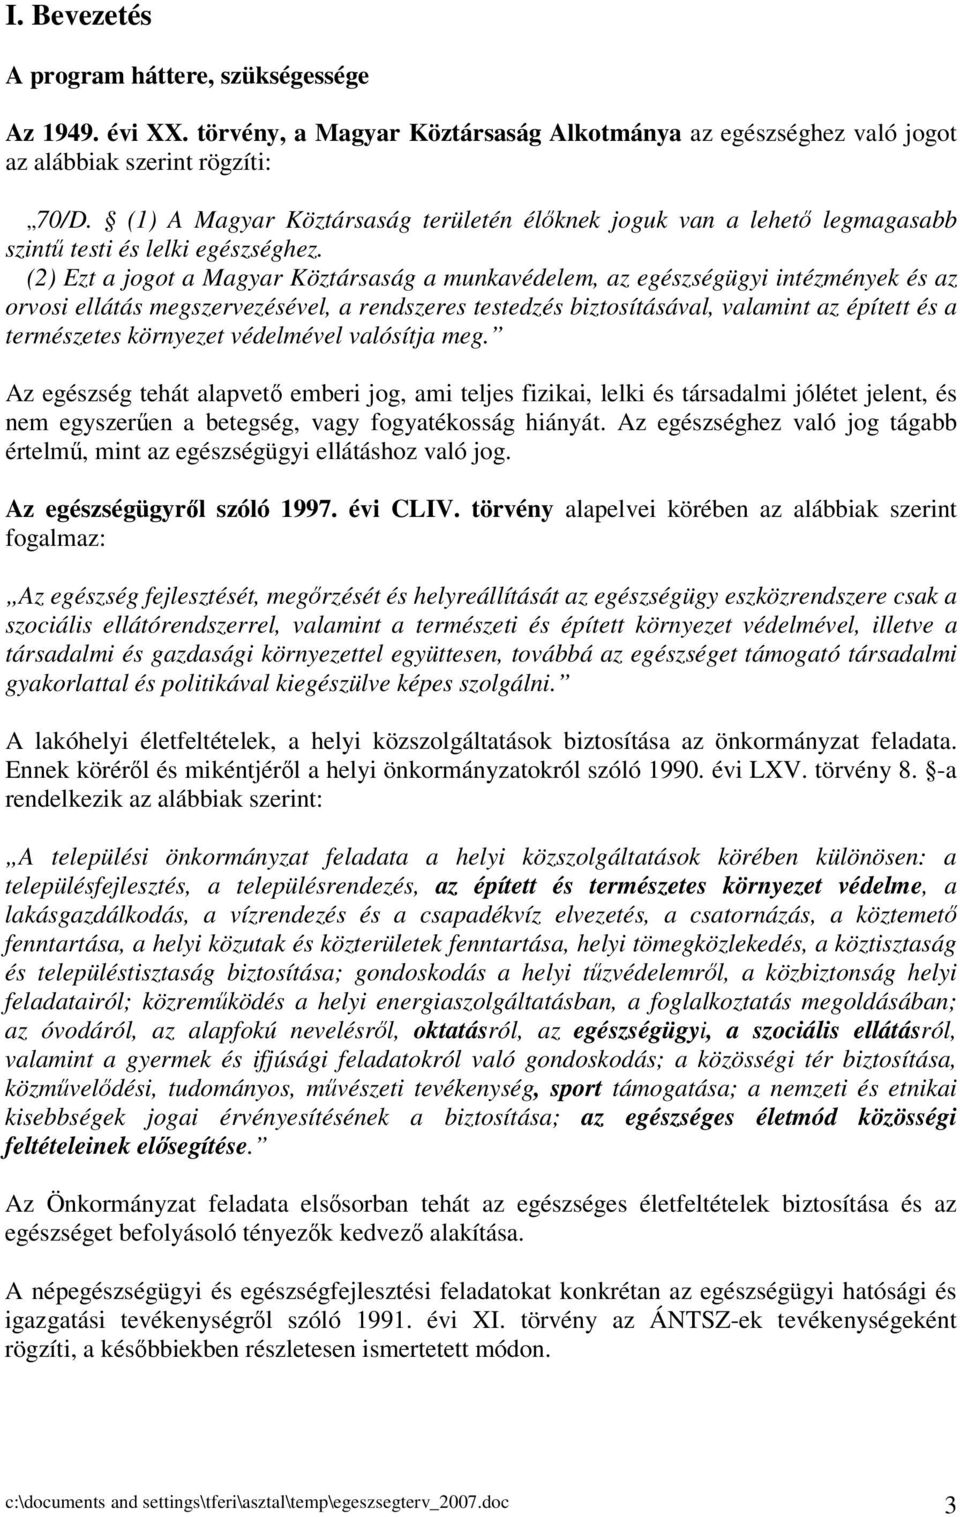 (2) Ezt a jogot a Magyar Köztársaság a munkavédelem, az egészségügyi intézmények és az orvosi ellátás megszervezésével, a rendszeres testedzés biztosításával, valamint az épített és a természetes